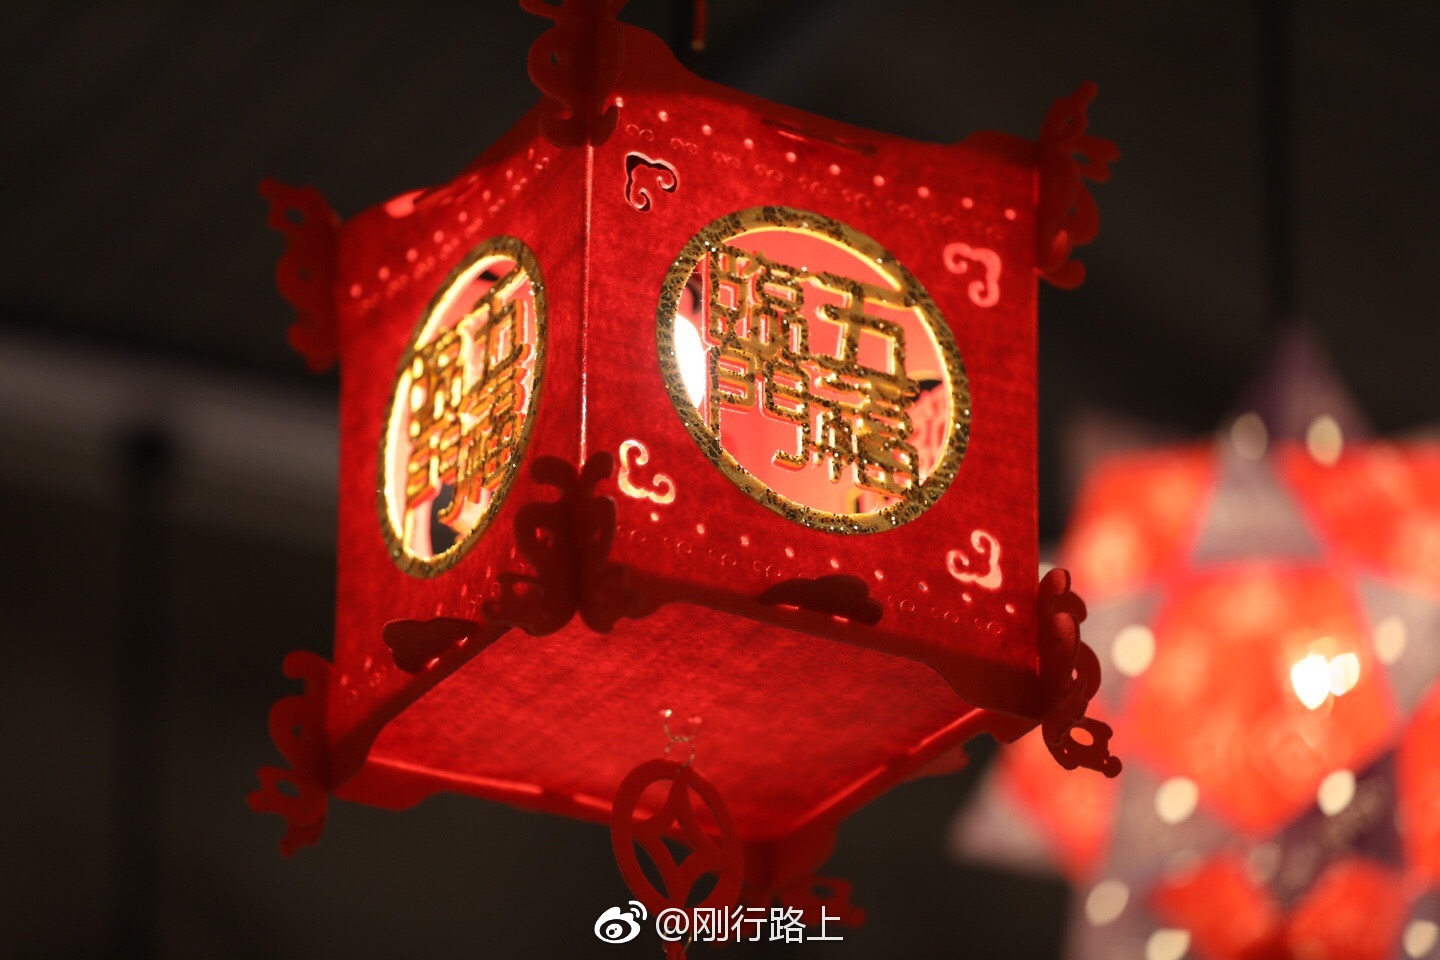 2019，中国，传统节日，农历新年，灯笼预览 | 10wallpaper.com